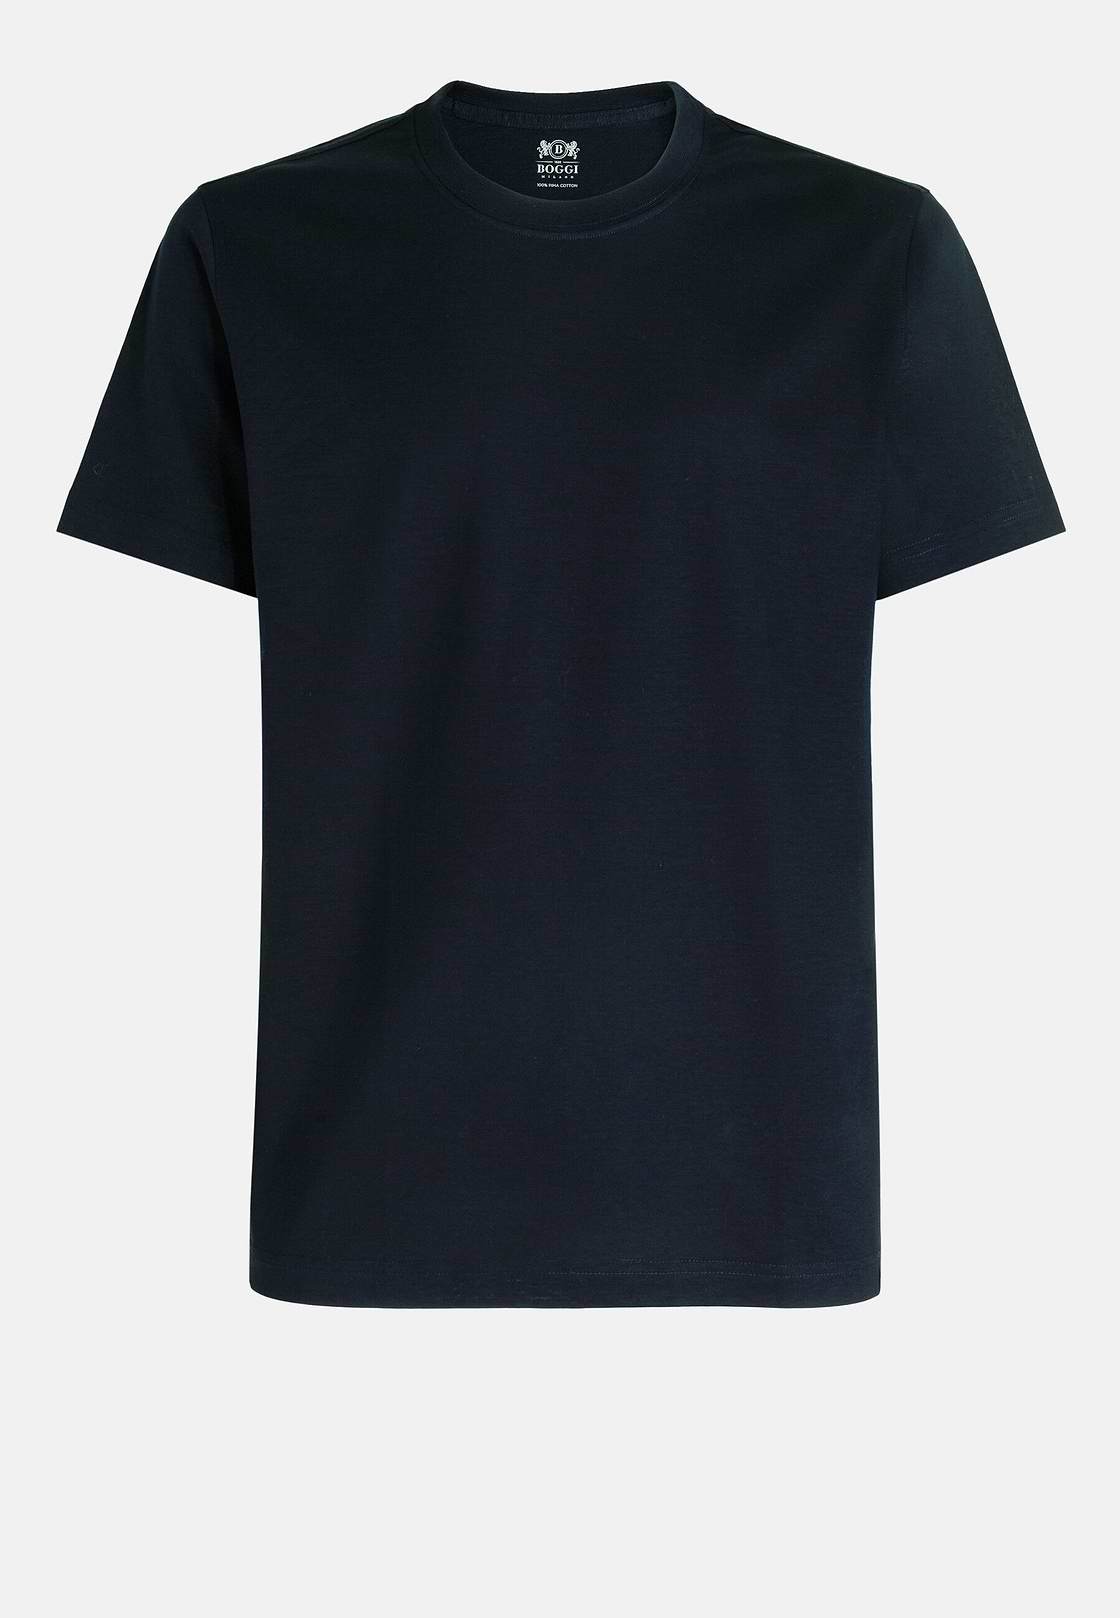 T-shirt En Jersey De Coton Pima, bleu marine, hi-res